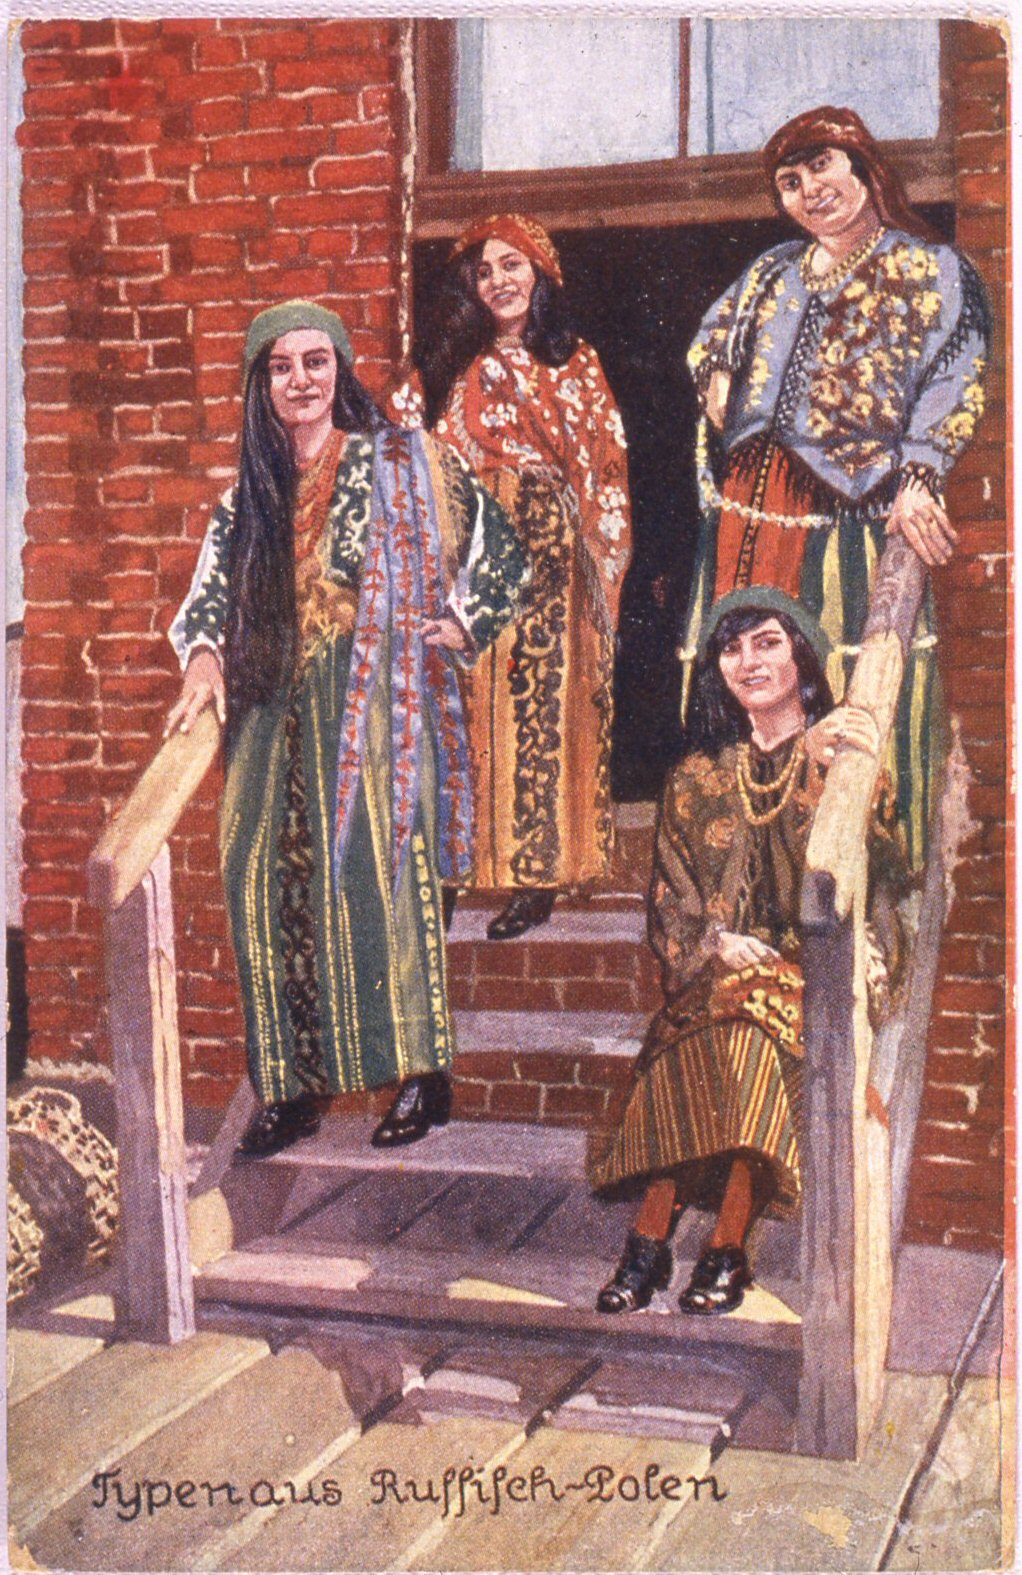 cartolina con costumi tipici della polonia russa (inizio xx secolo)